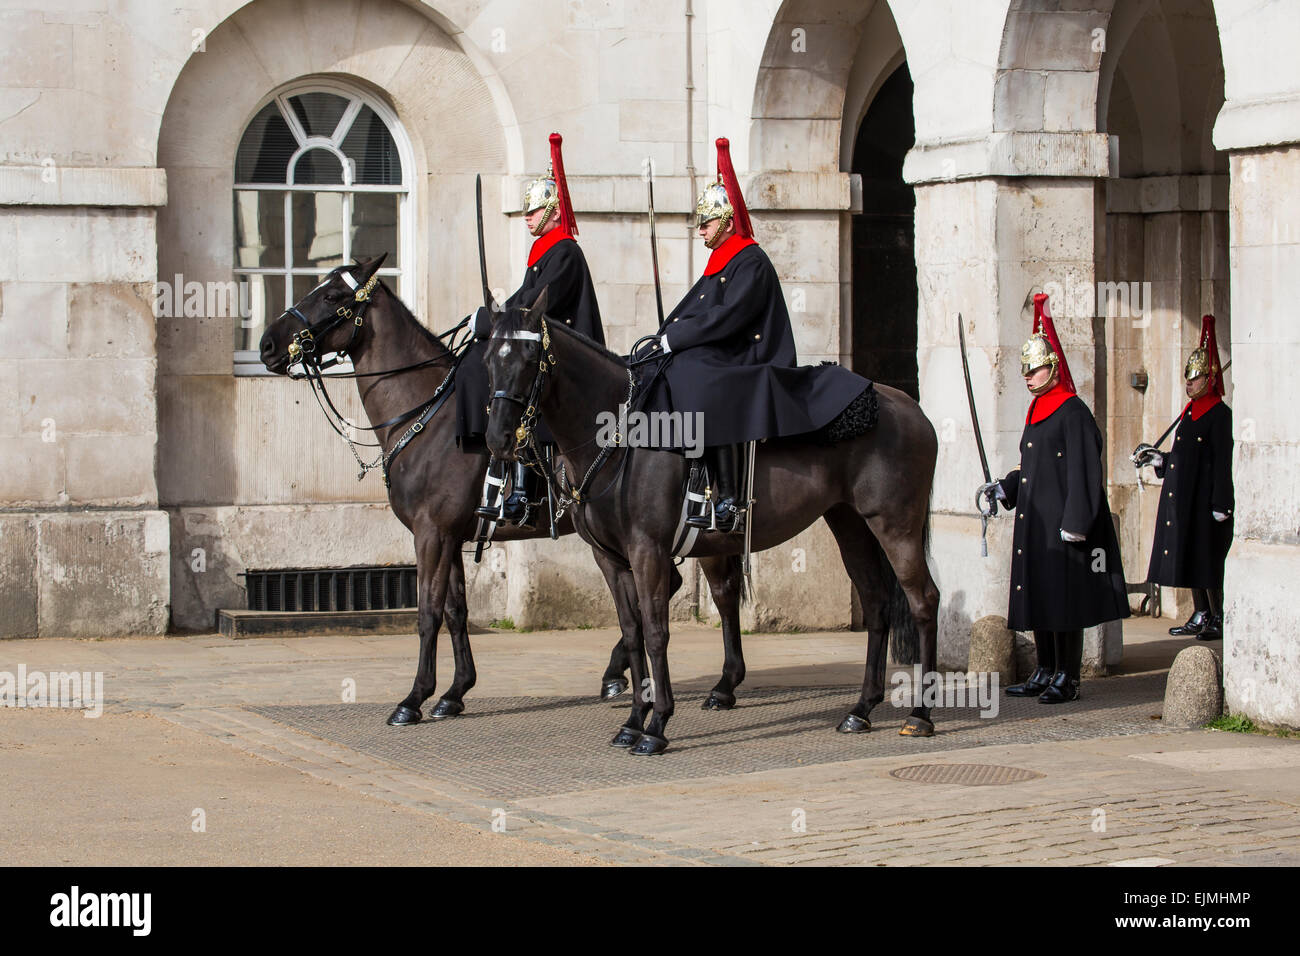 Royal Horse Guards en service à cheval, Londres Banque D'Images